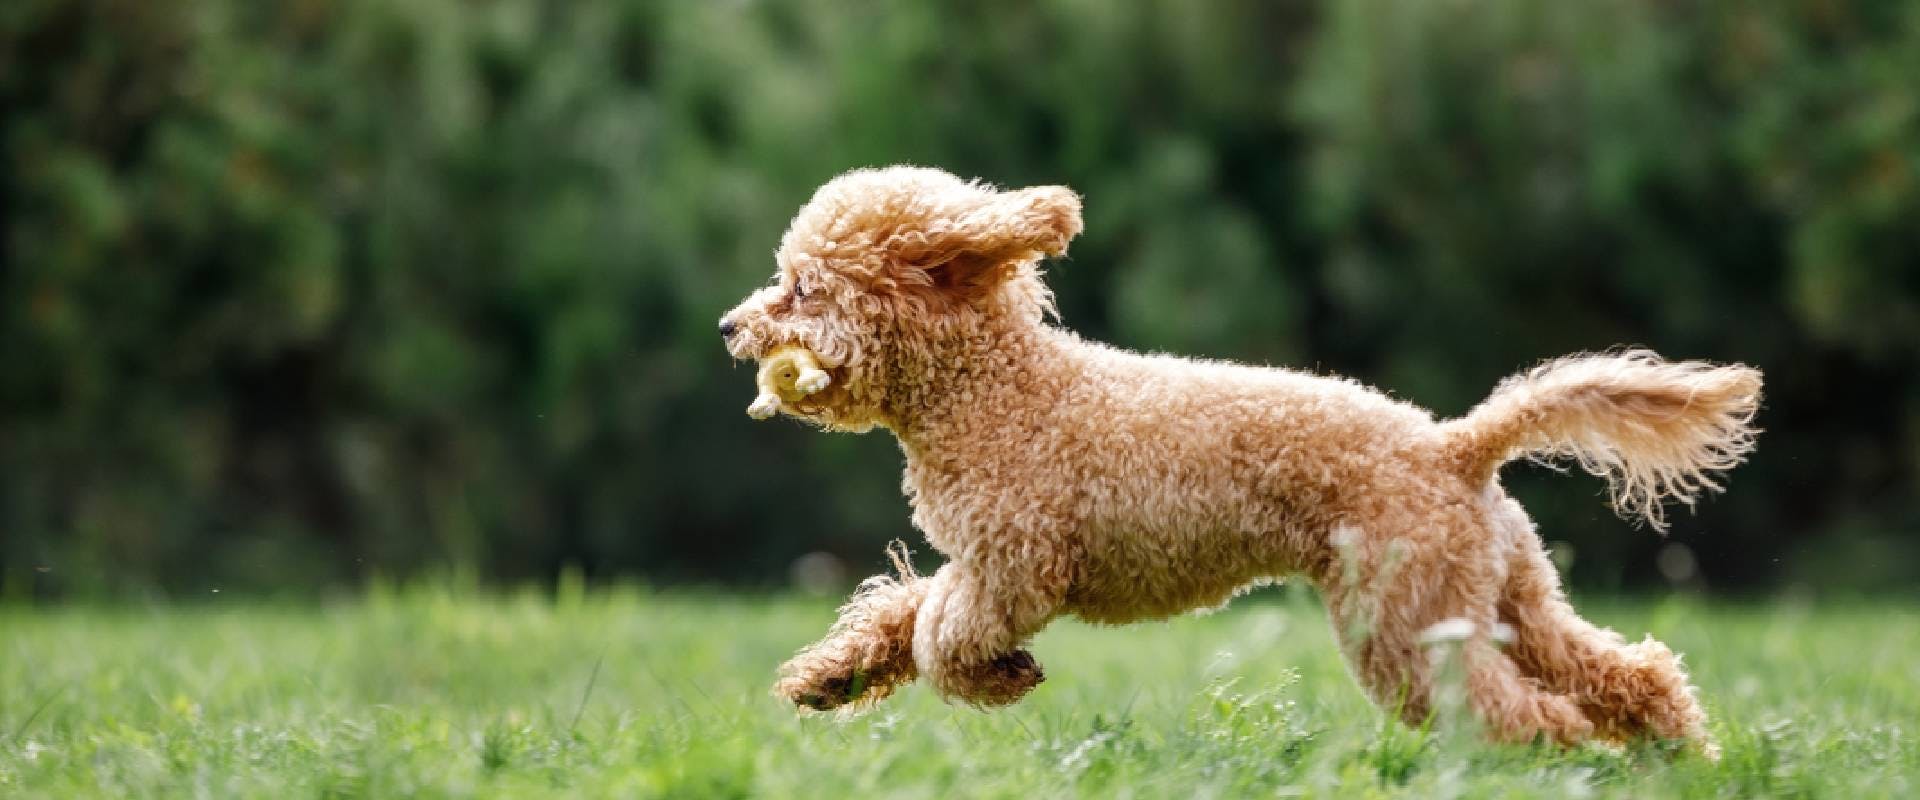 Irish Doodle parent: Poodle running along grass